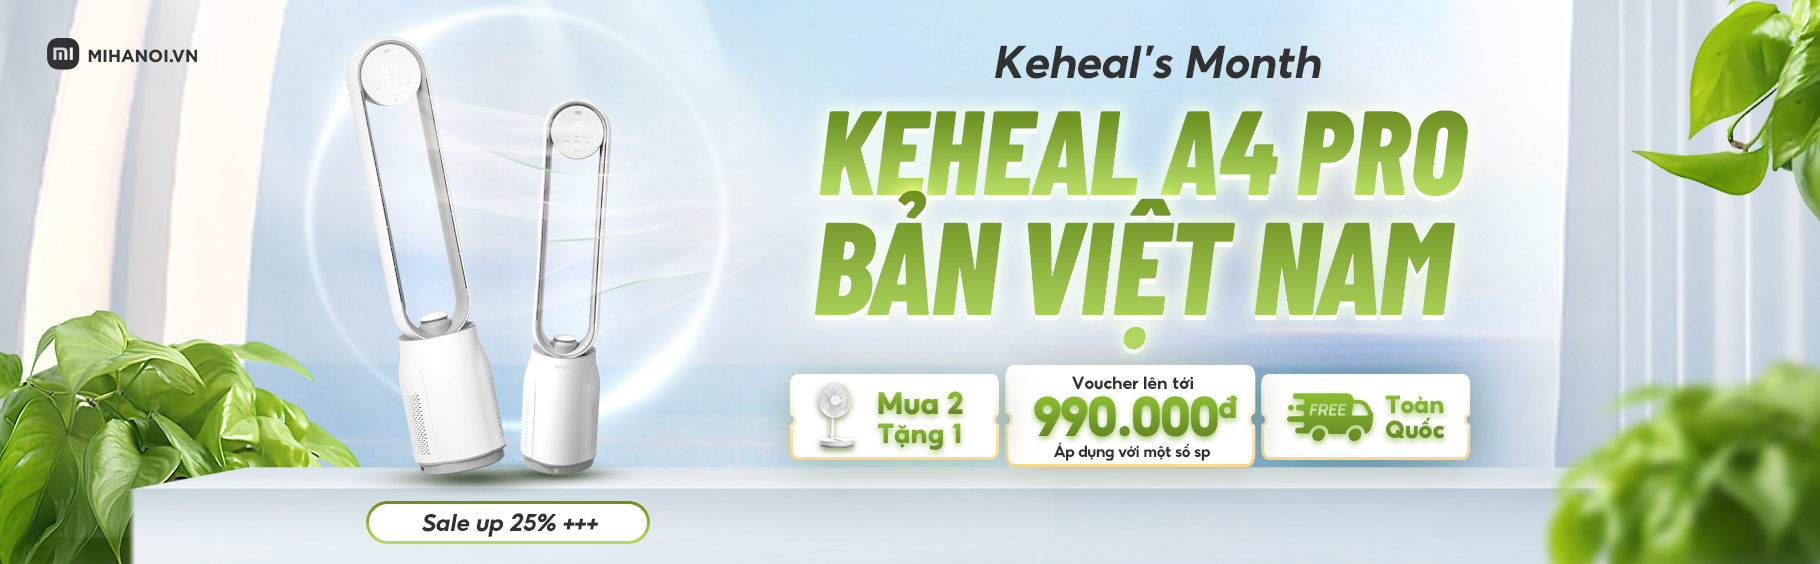 Chính thức mở bán độc quyền Keheal A4 Pro bản Việt Nam